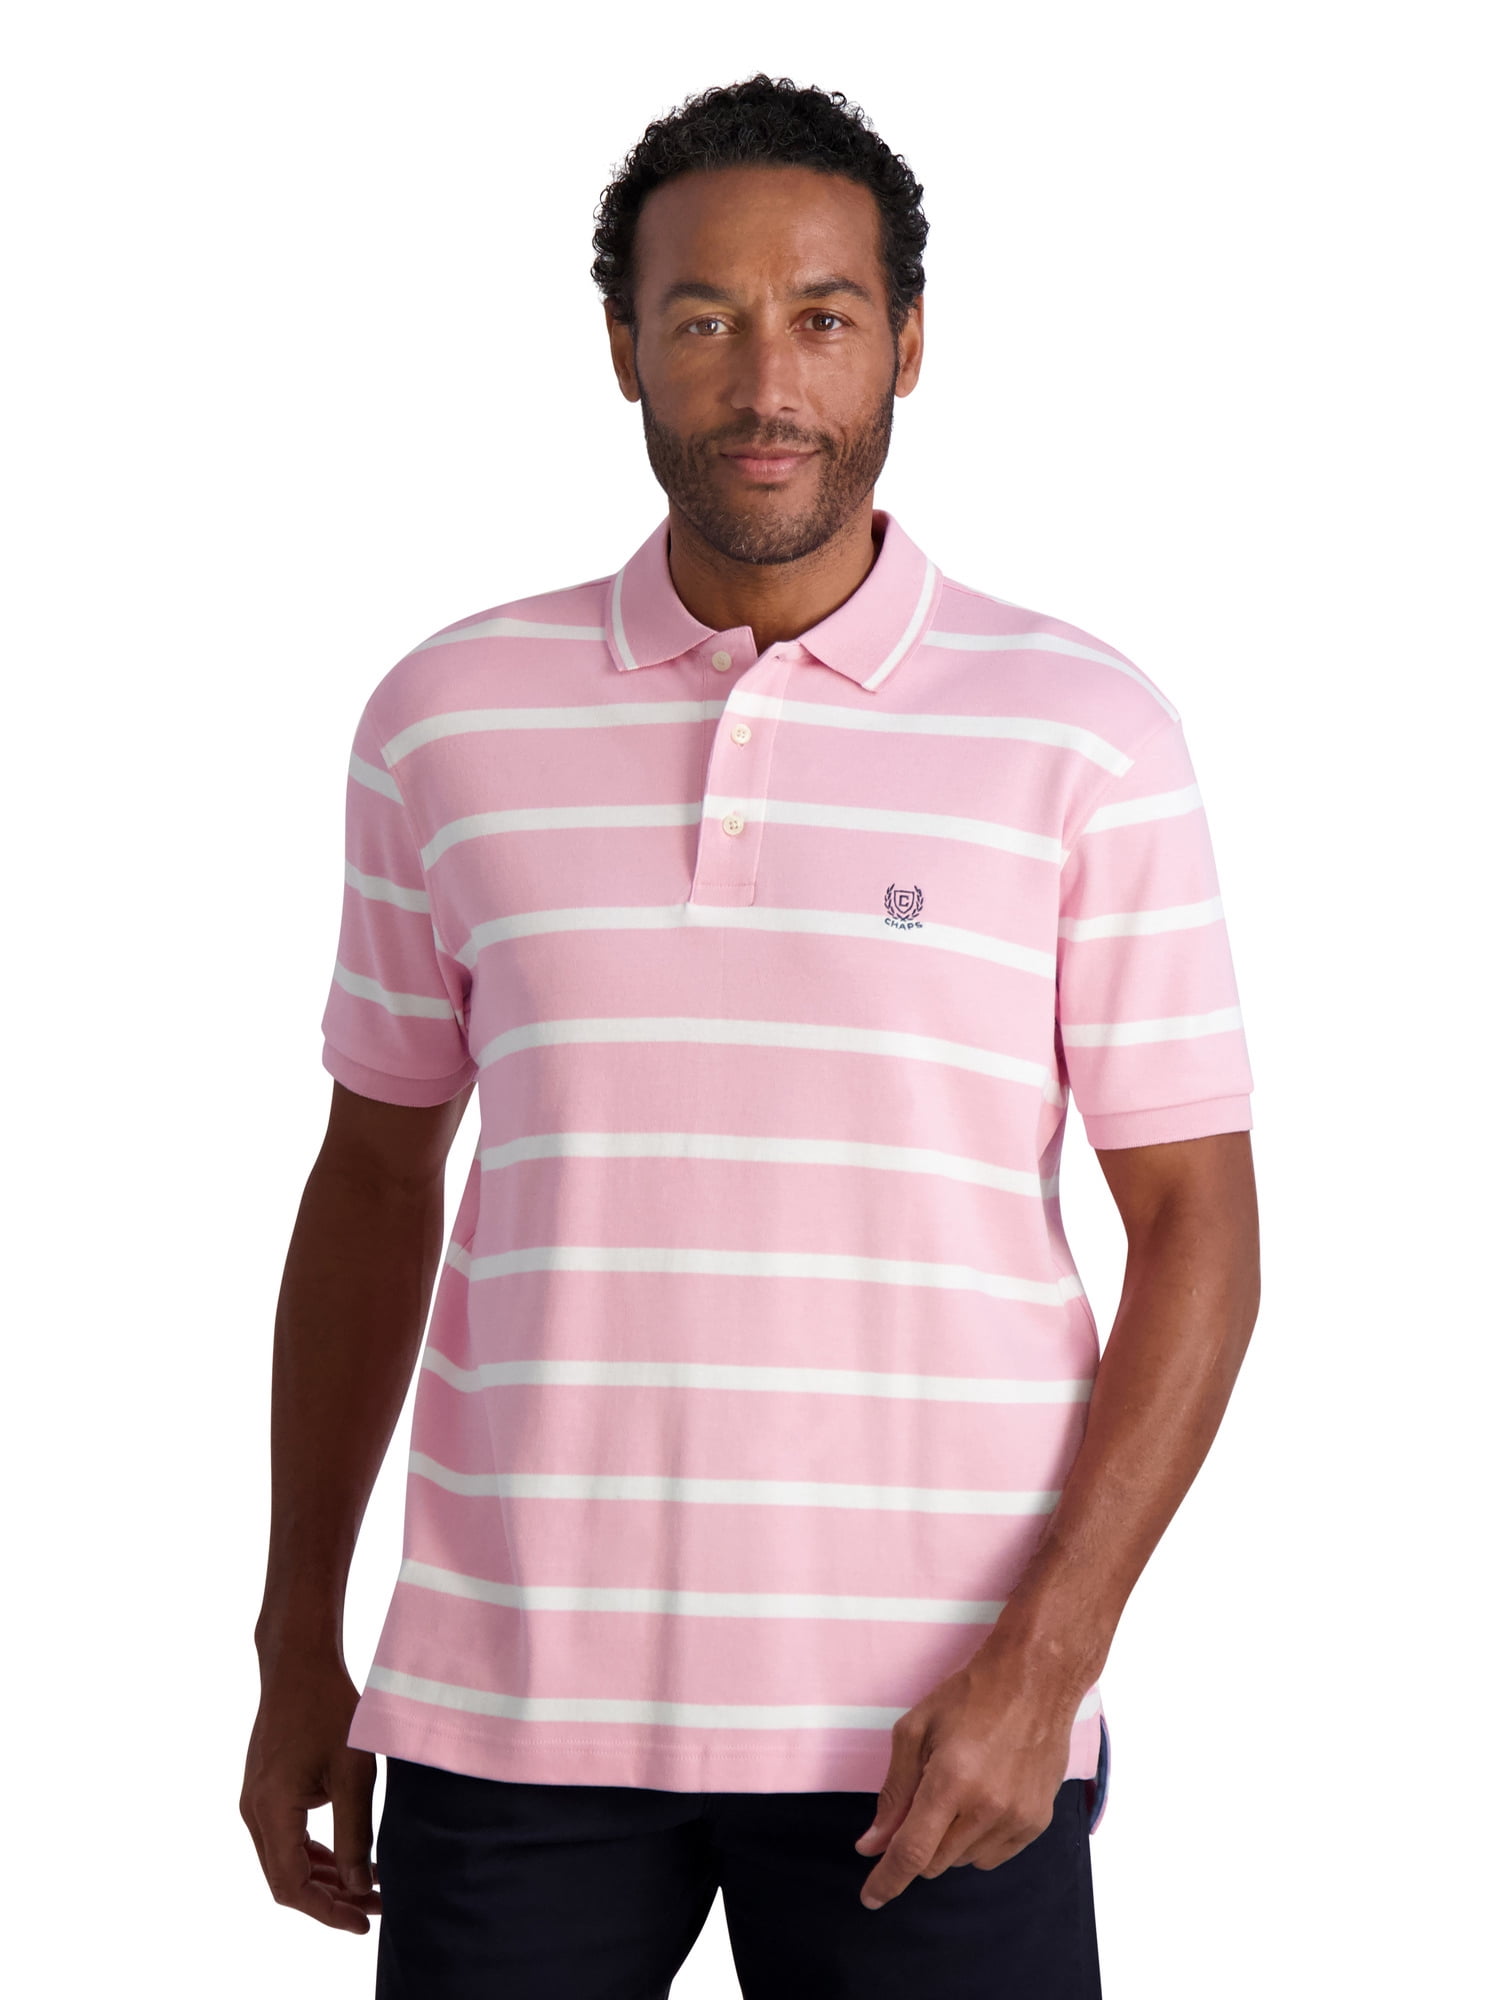 Reizen Astrolabium salaris Chaps Men's Classic Fit Striped Cotton Jersey Polo Shirt, Sizes XS-4XB -  Walmart.com